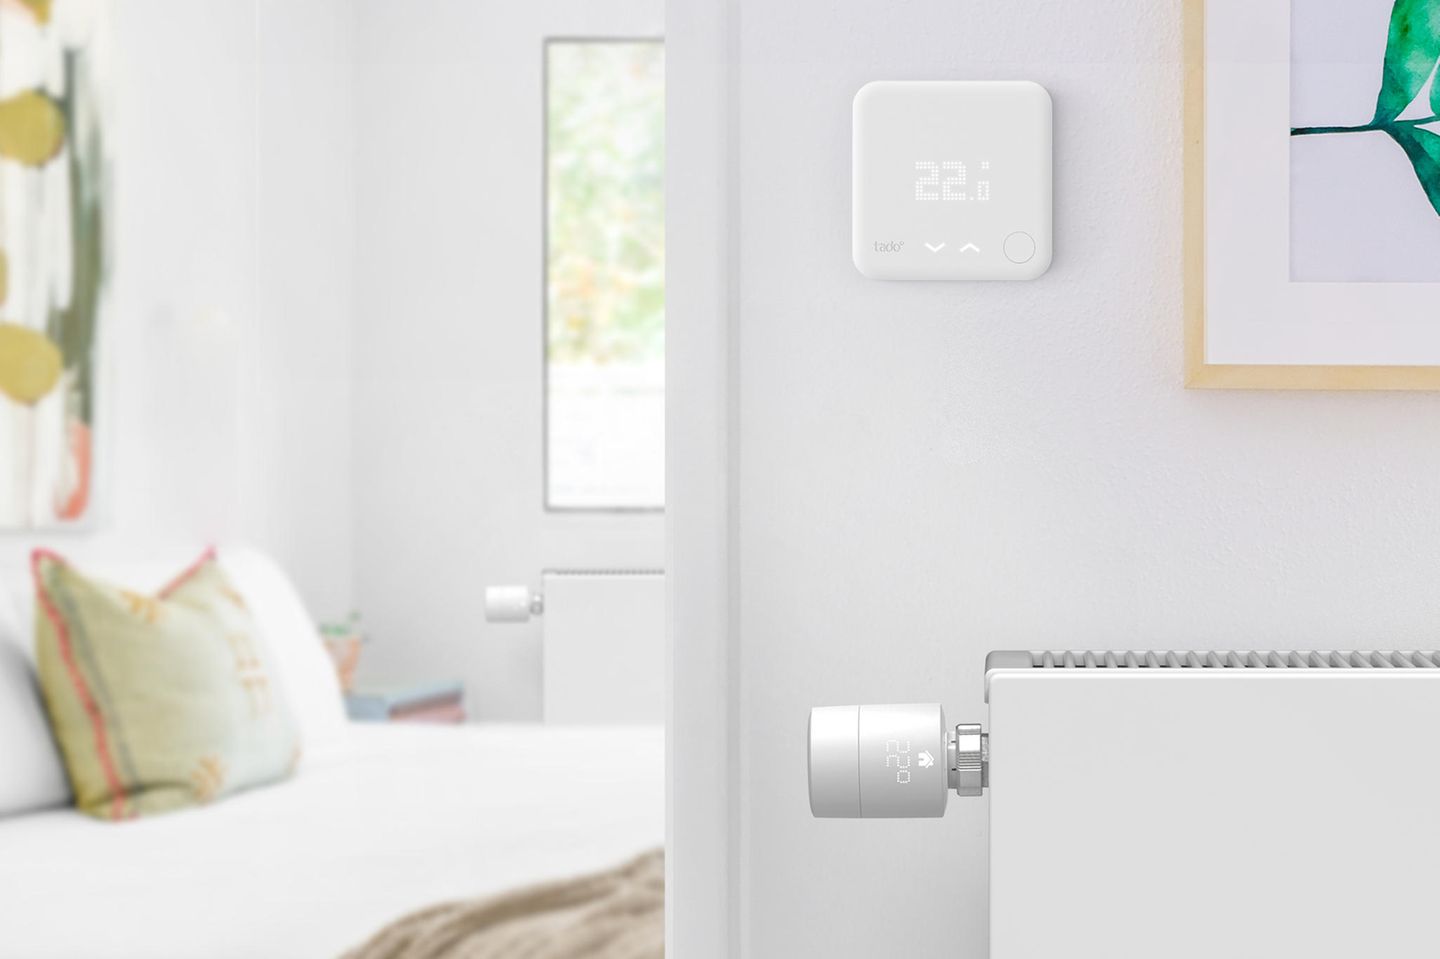 Smartes Thermostat an einem weißen Heizkörper im Flur vor einem geöffneten Schlafzimmer